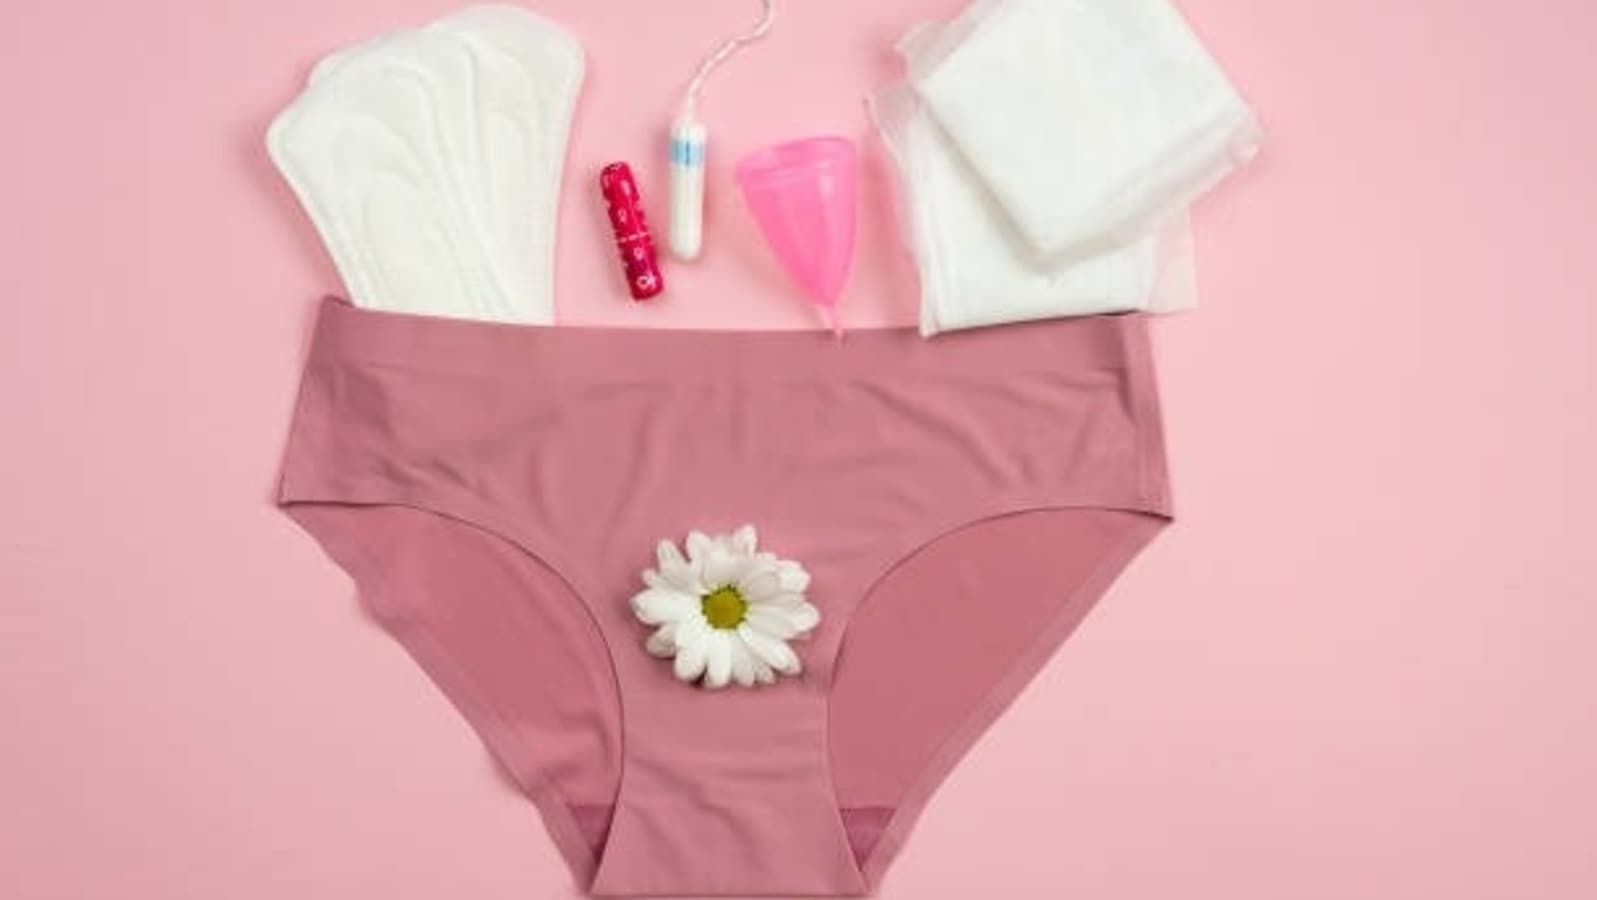 Mother develops period-proof underwear to help girls' transition